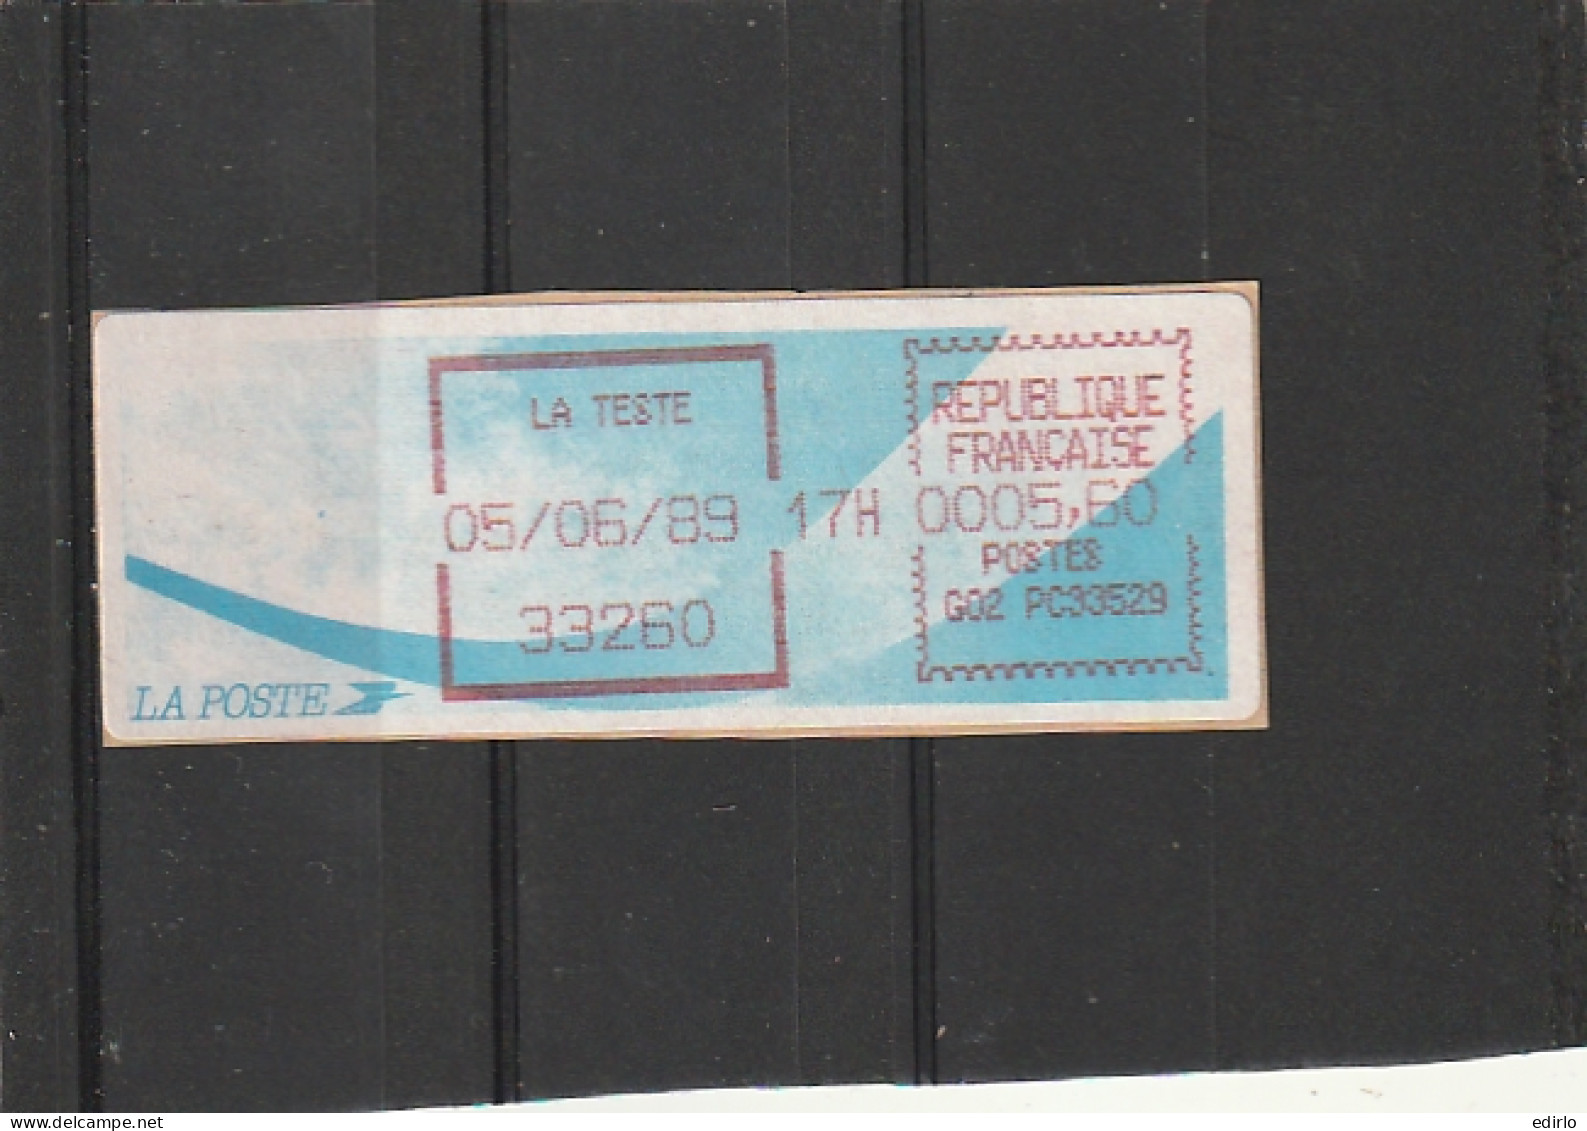 ///  FRANCE ///  LSA  Timbre Vignette Distributeur Comète LA TESTE Gironde - 1988 « Comète »